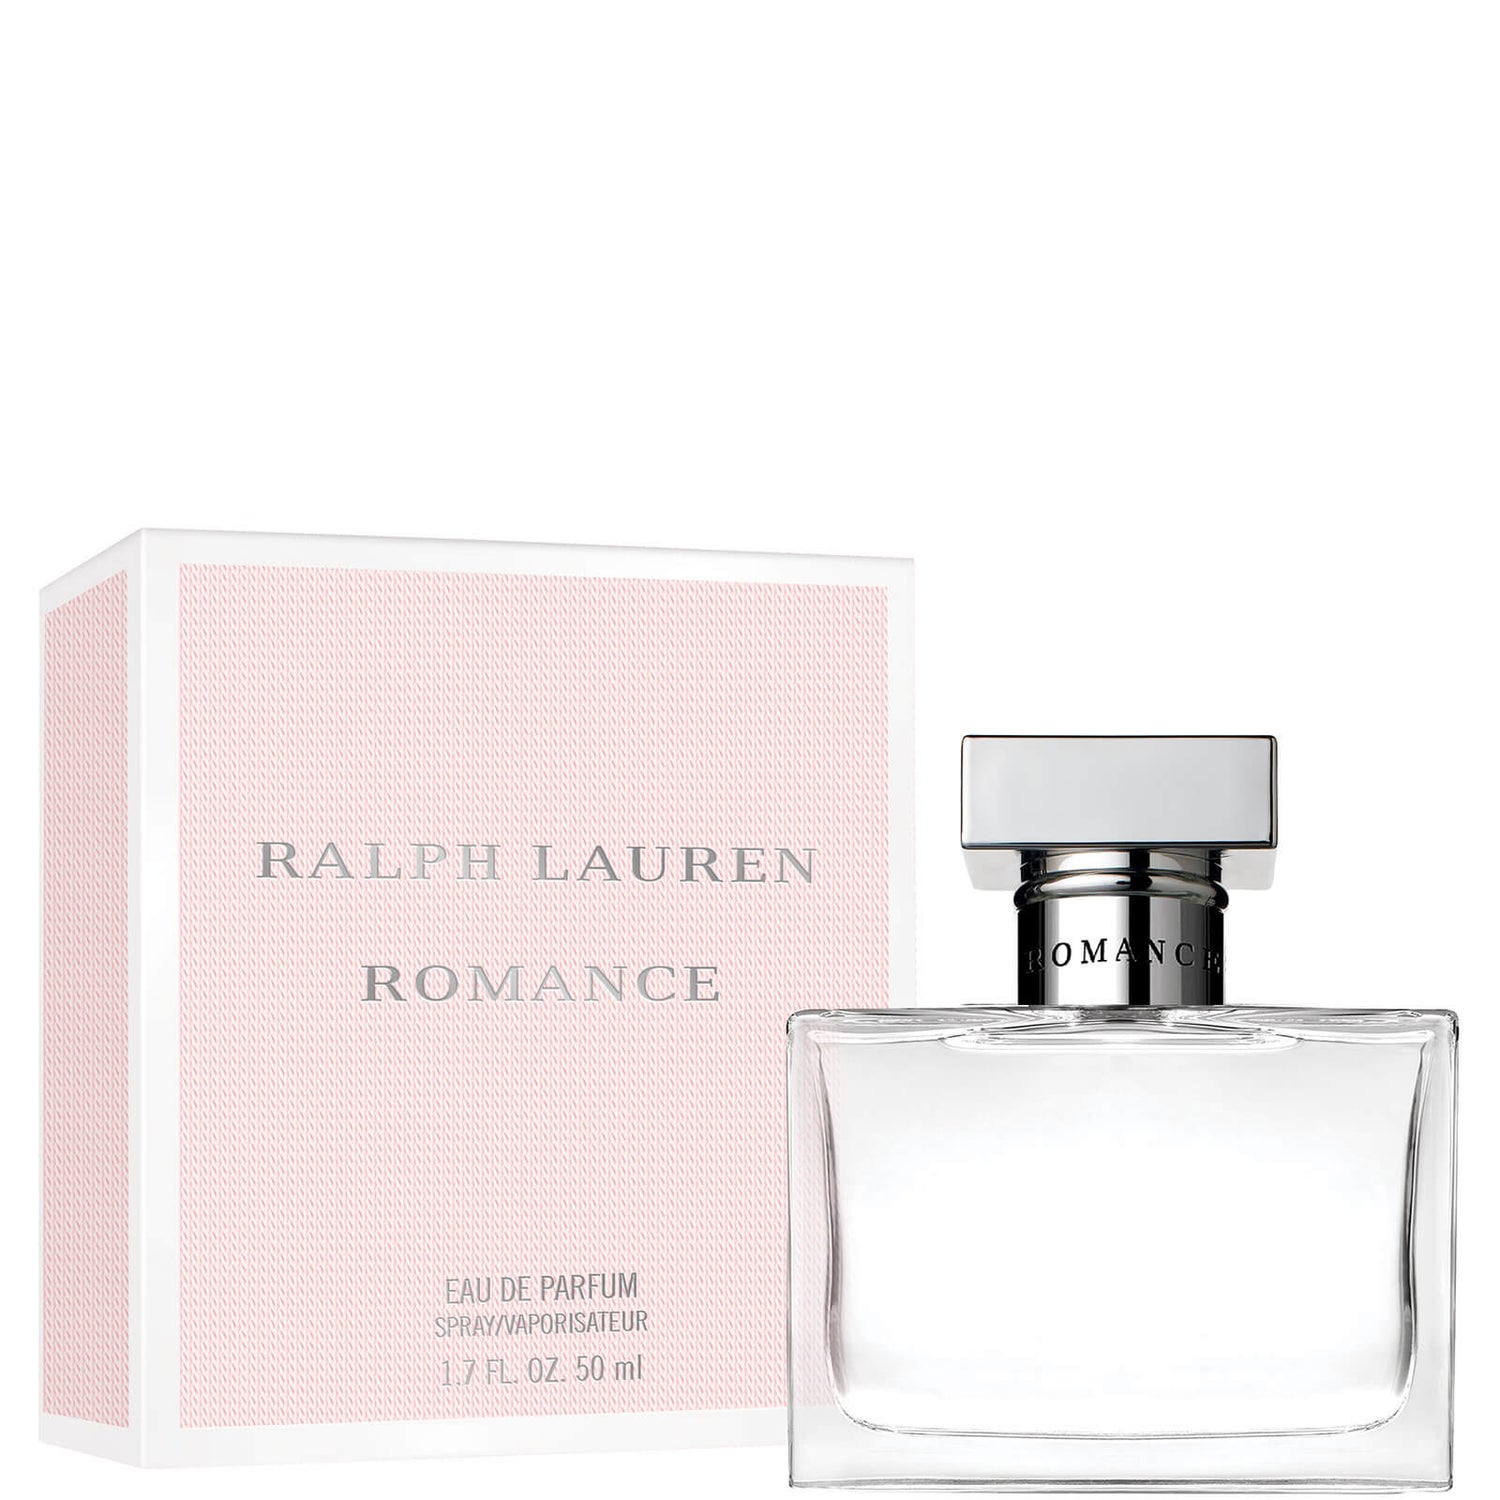 Ralph Lauren Romance Eau de Parfum 50ml Ralph Lauren Romance parfémovaná voda 50 ml